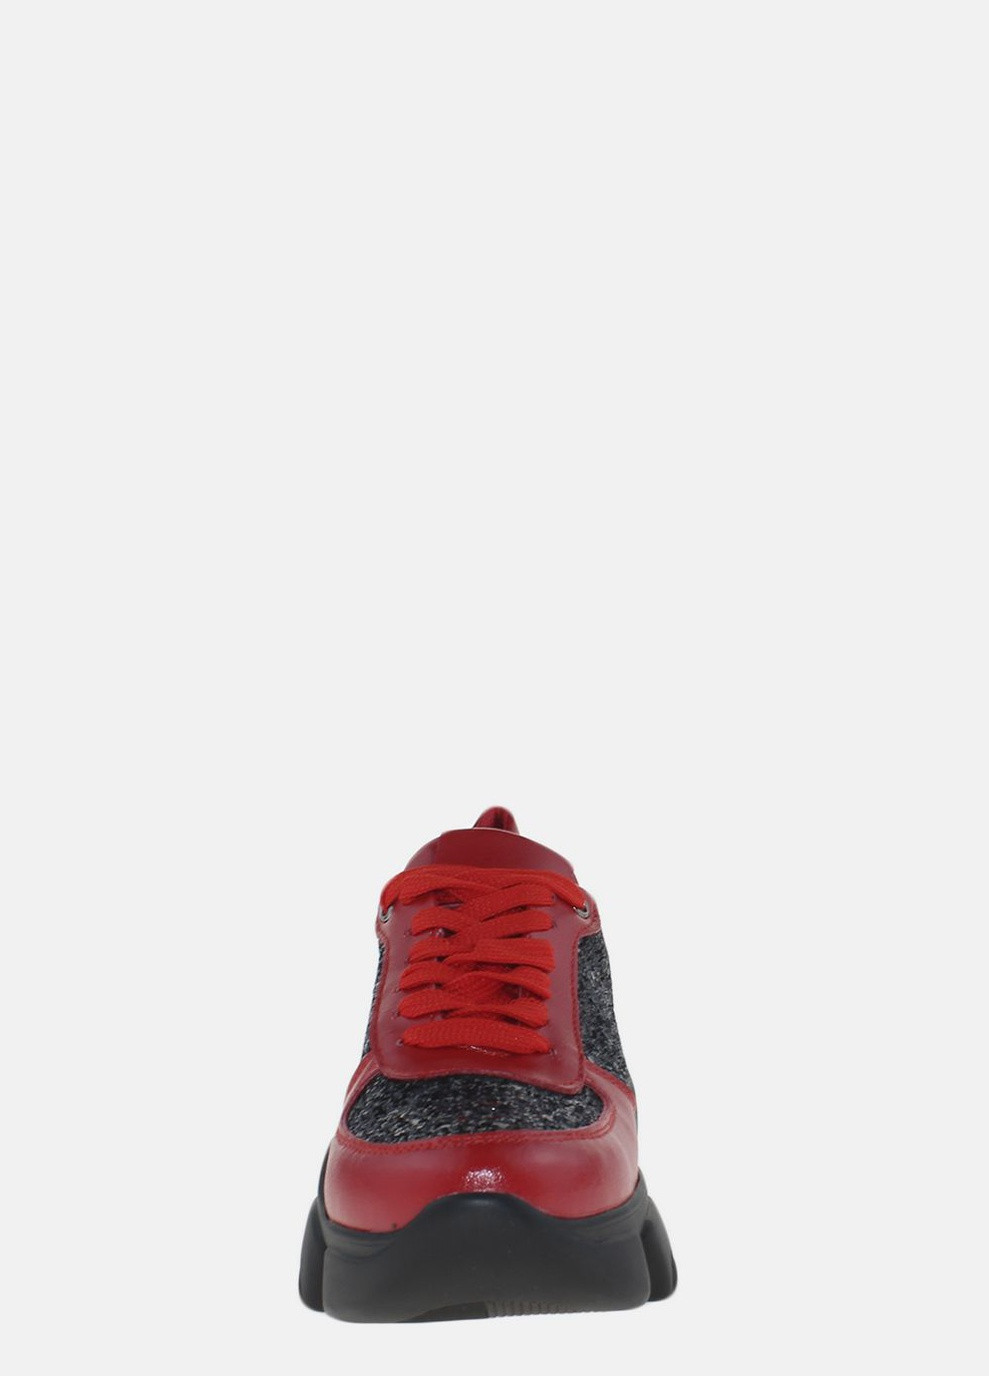 Красные демисезонные кроссовки r20-4568 красный-черный Fabiani